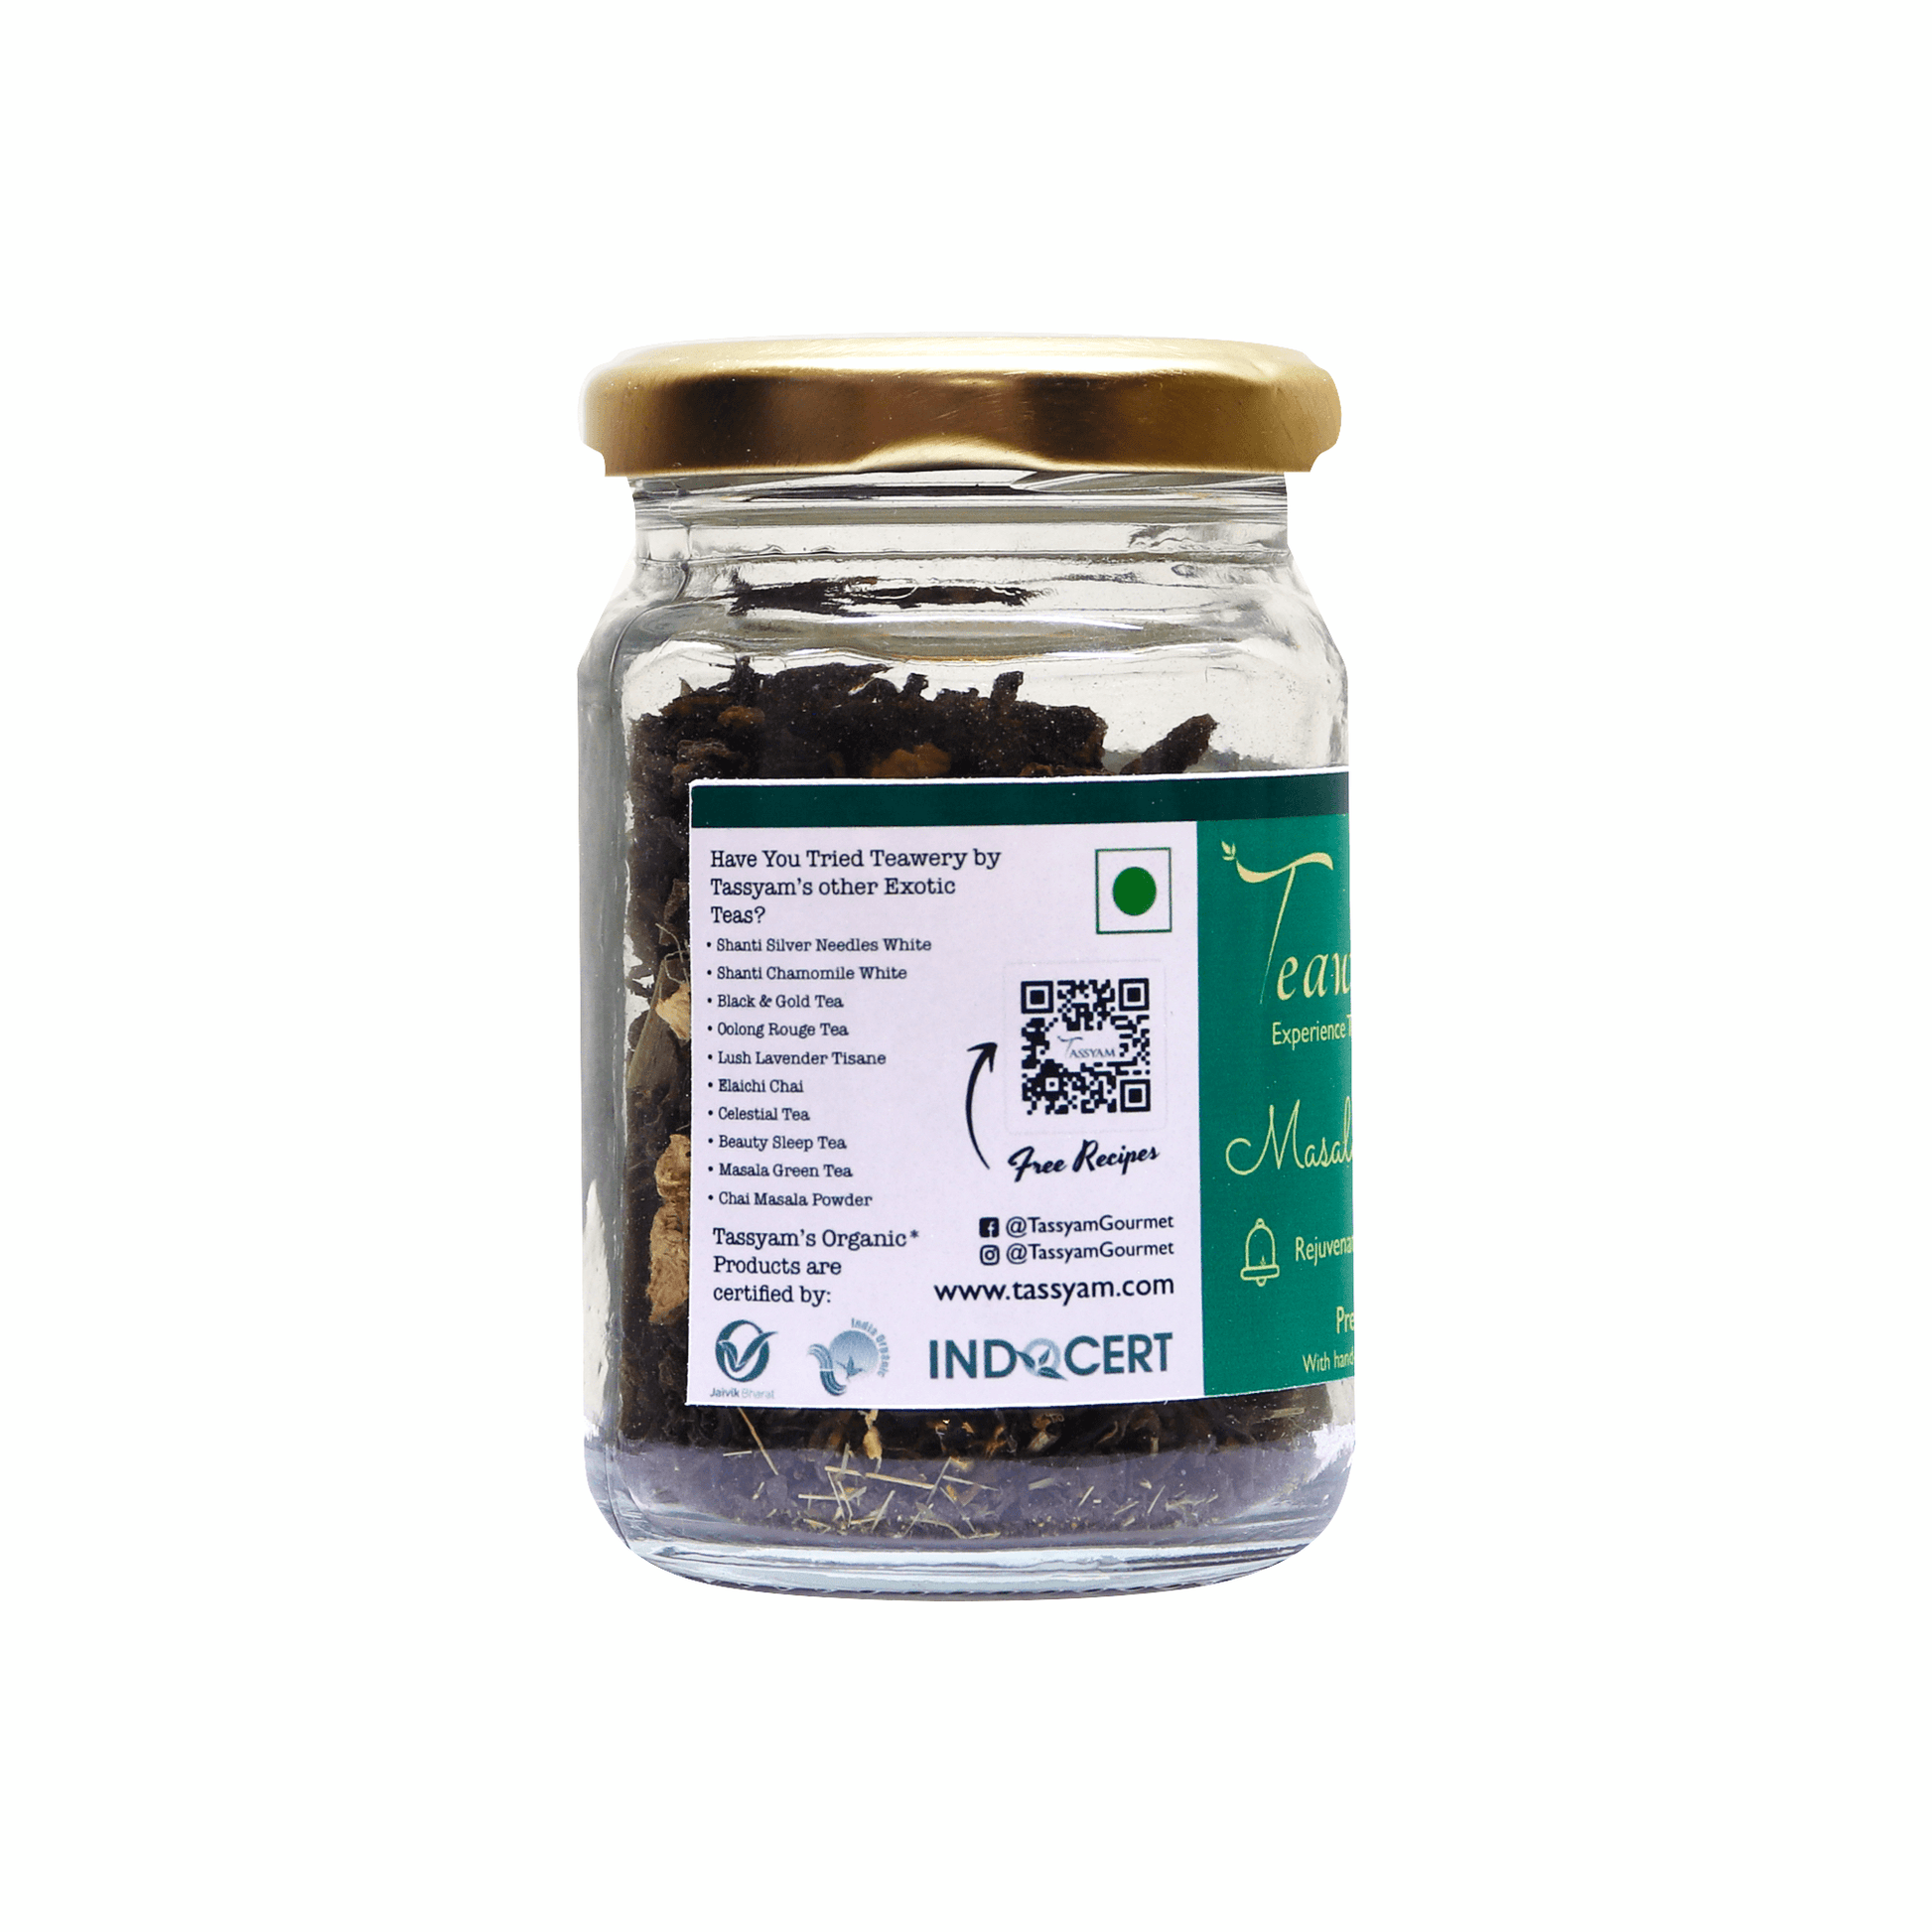 Masala Green Tea - Tassyam Organics